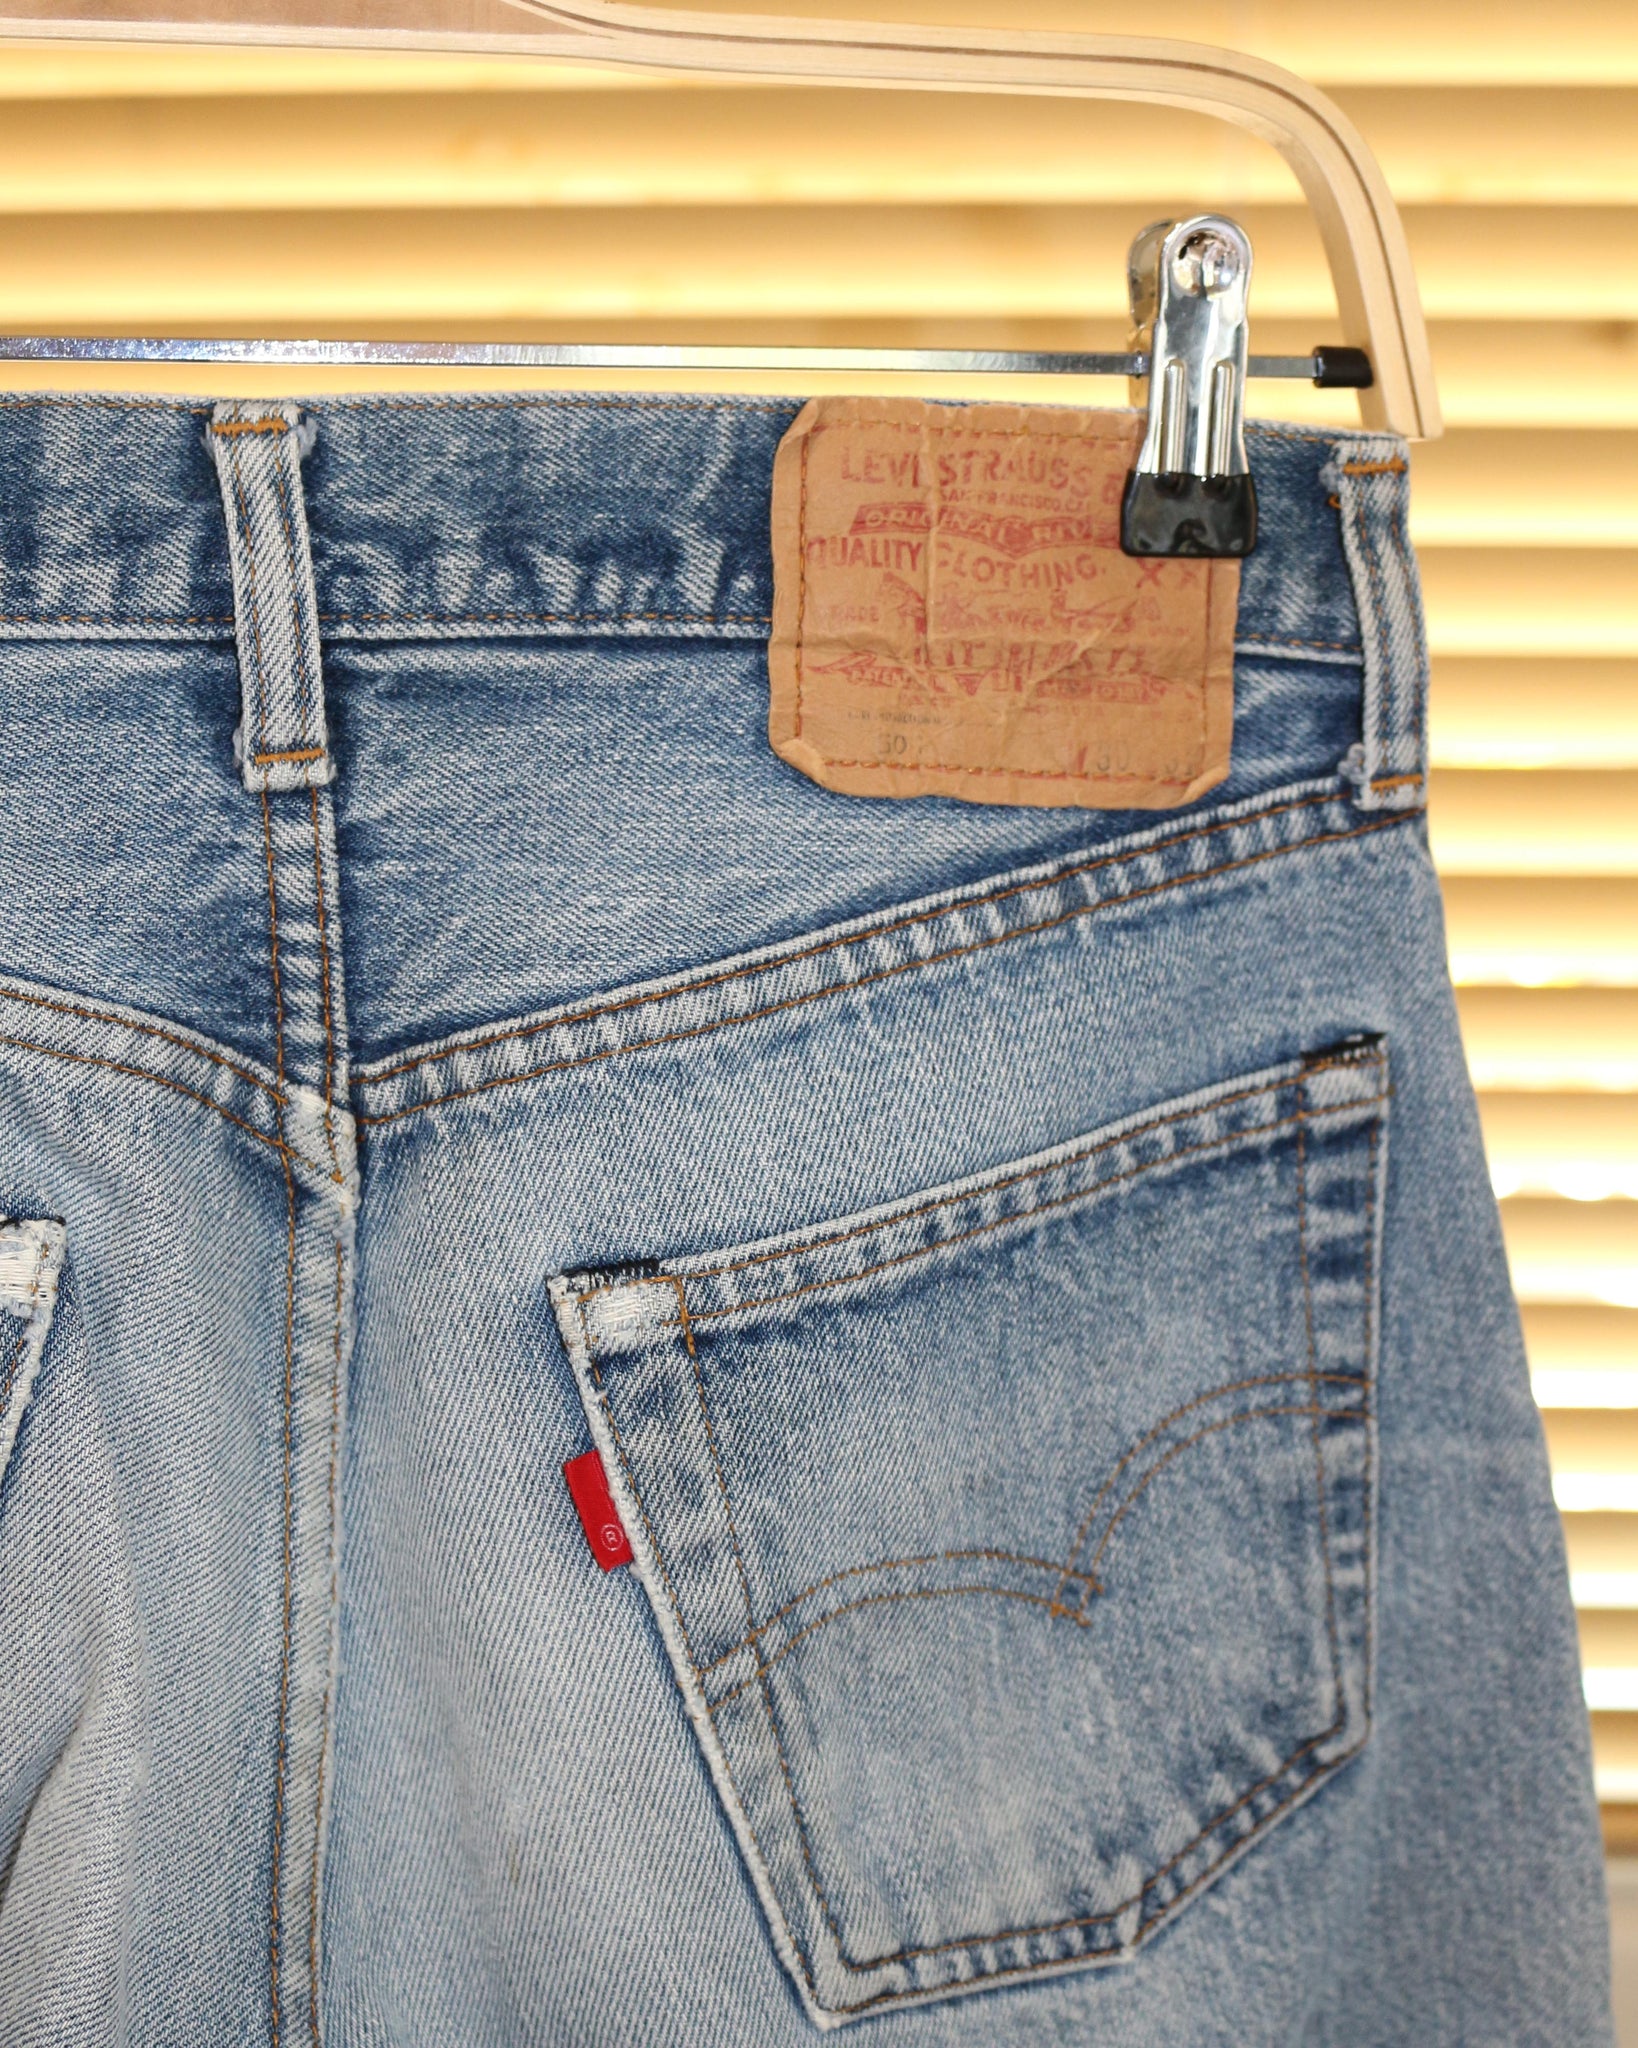 1937 501® Original Fit Selvedge Men's Jeans - Medium Wash